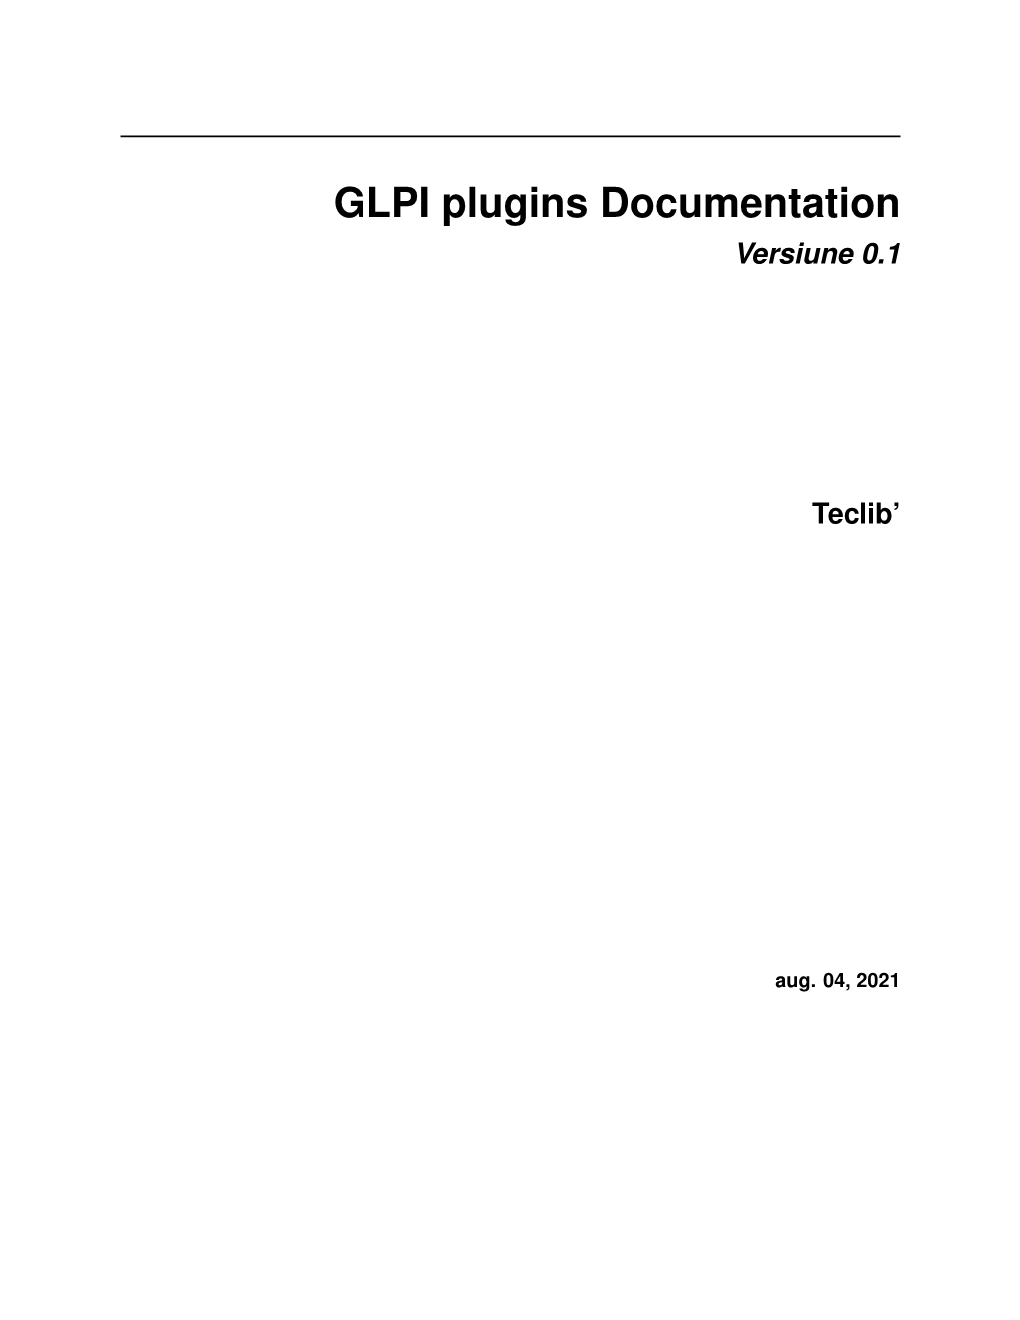 GLPI Plugins Documentation Versiune 0.1